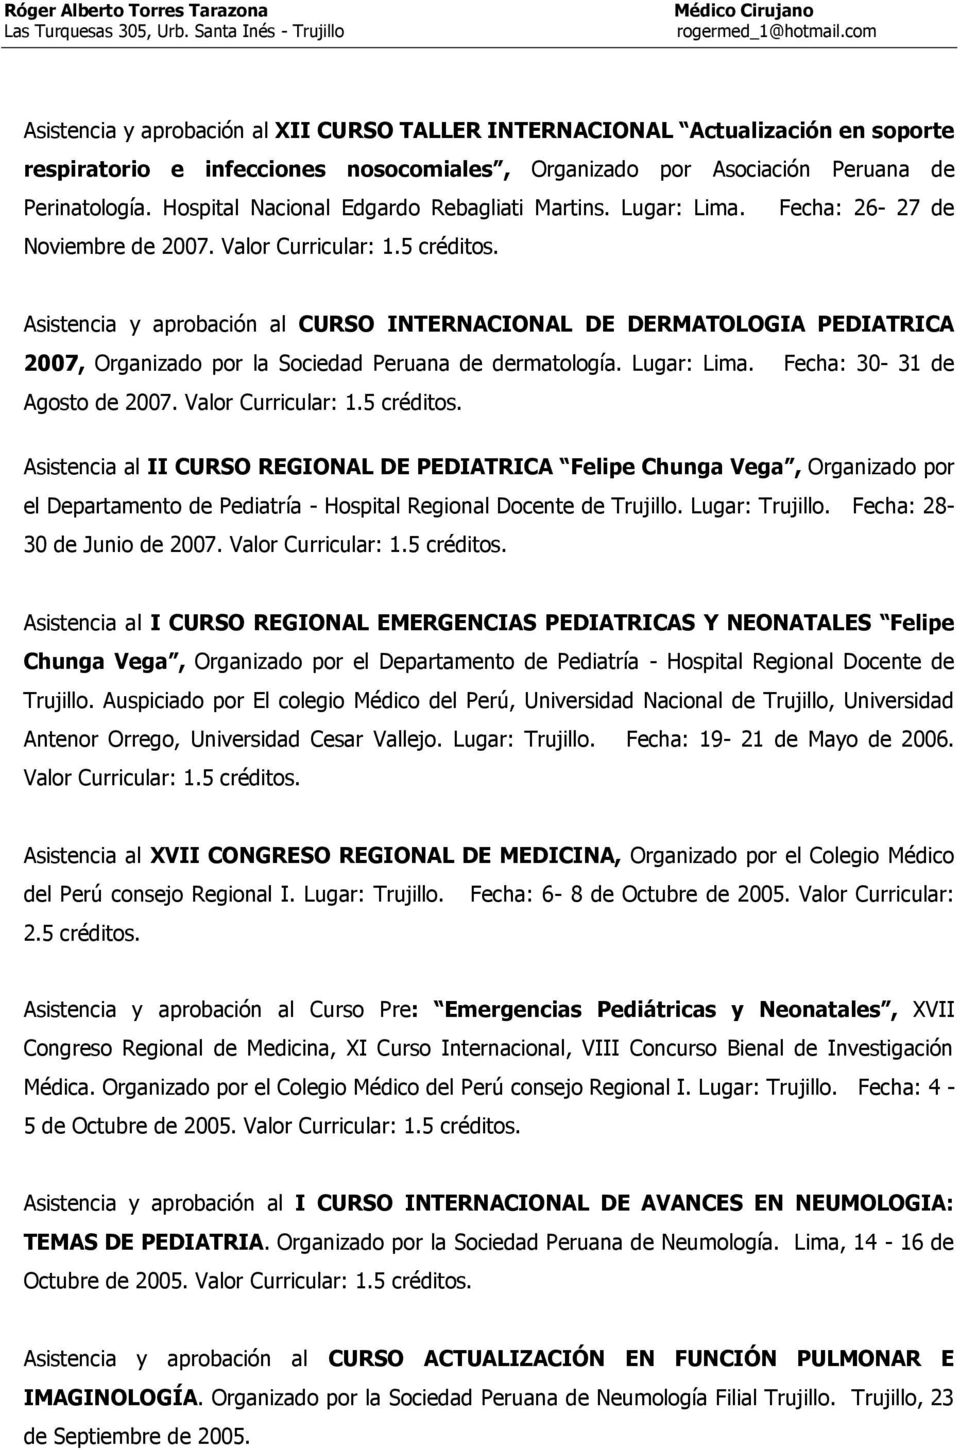 Asistencia y aprobación al CURSO INTERNACIONAL DE DERMATOLOGIA PEDIATRICA 2007, Organizado por la Sociedad Peruana de dermatología. Lugar: Lima. Fecha: 30-31 de Agosto de 2007. Valor Curricular: 1.